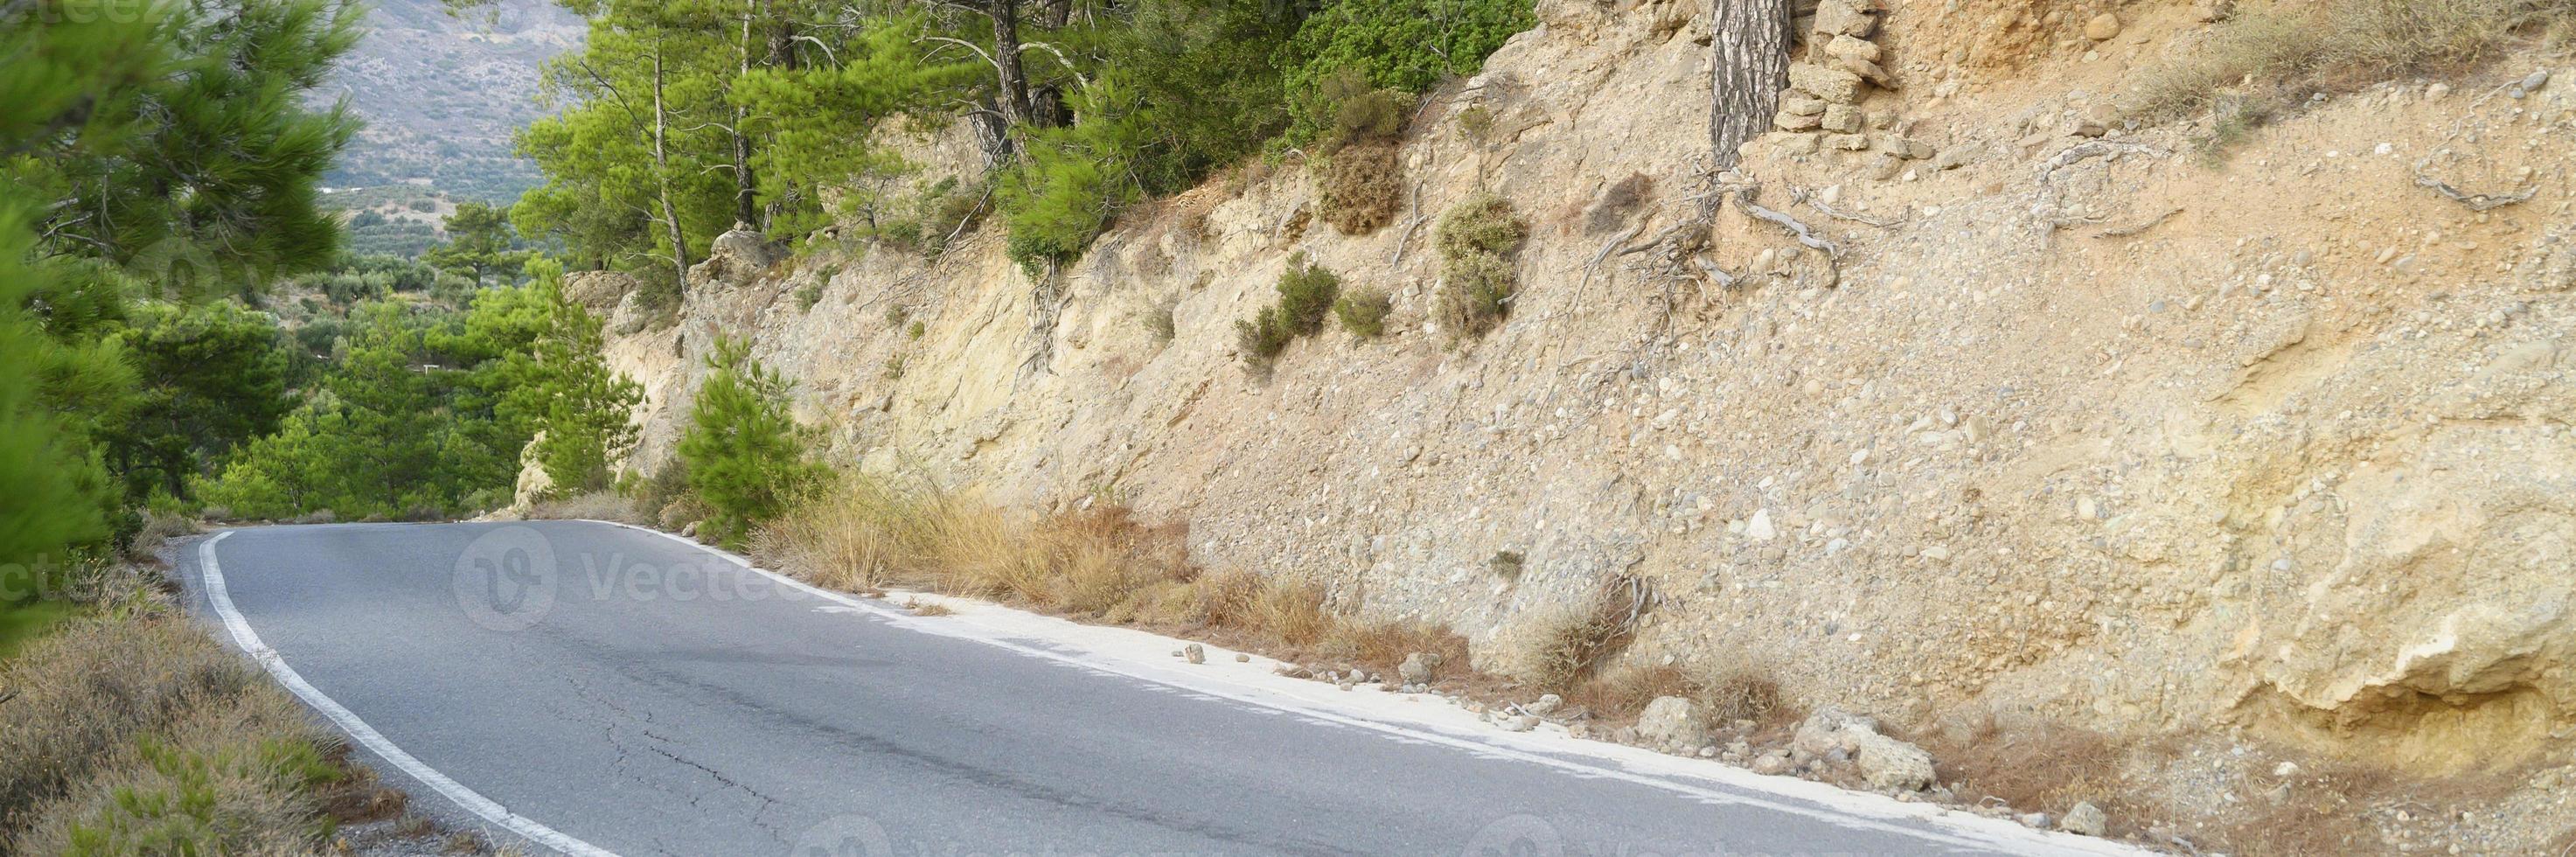 estrada de asfalto nas montanhas mediterrâneas coberta de pinheiros foto